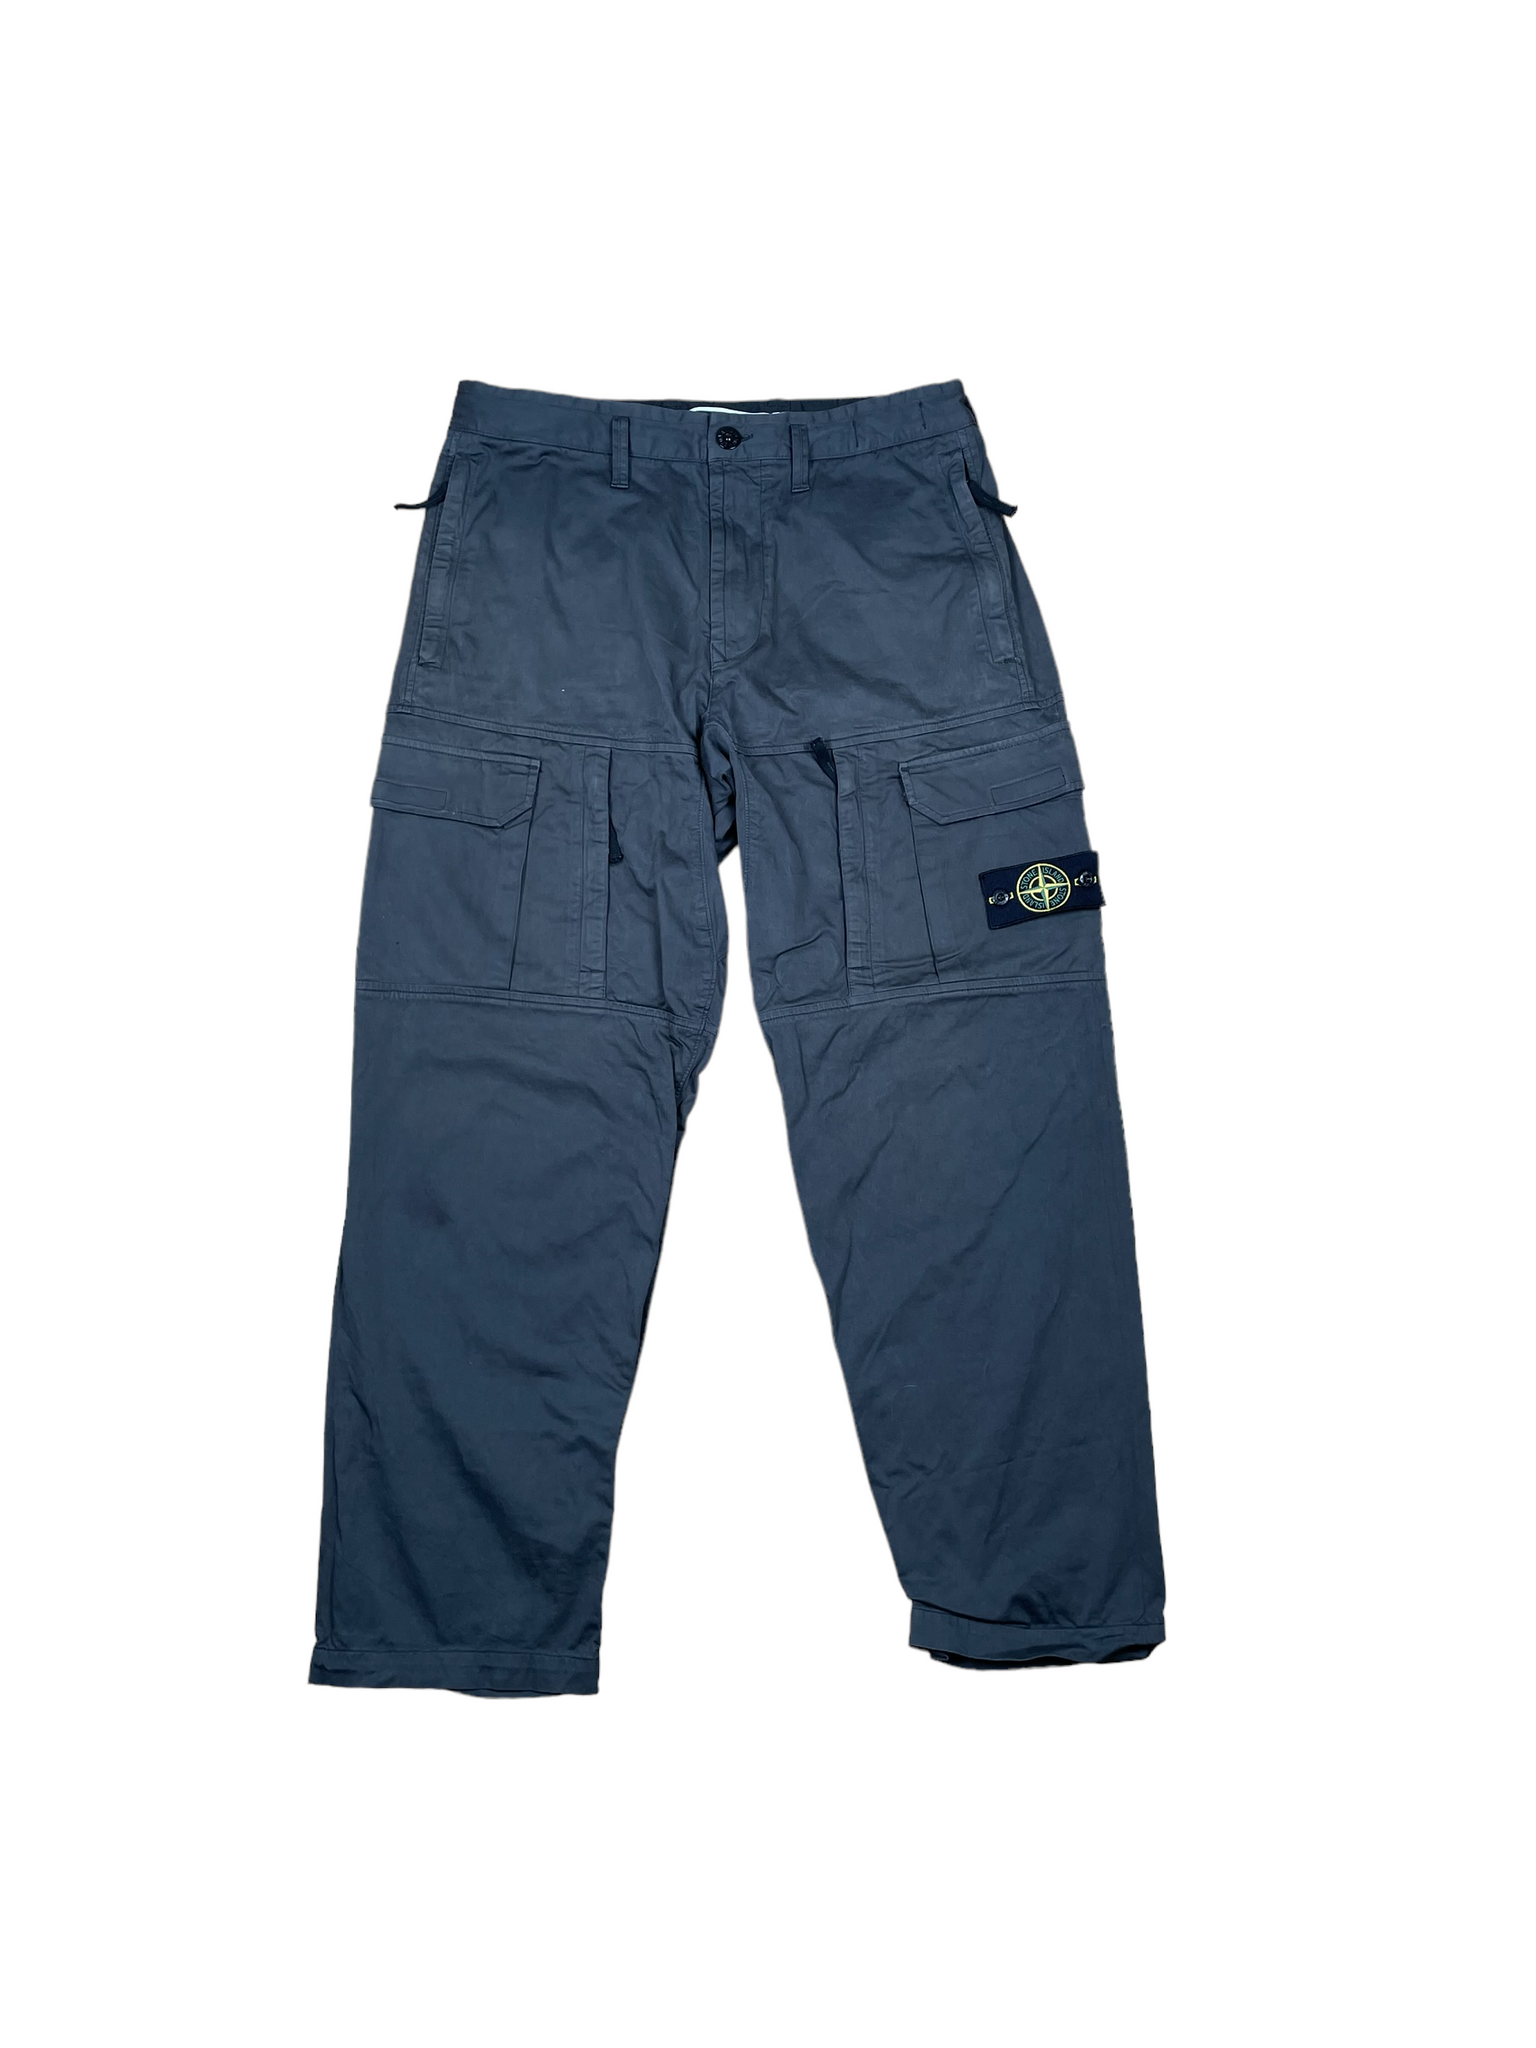 Stone Island Cargo Trousers - W31” L33”